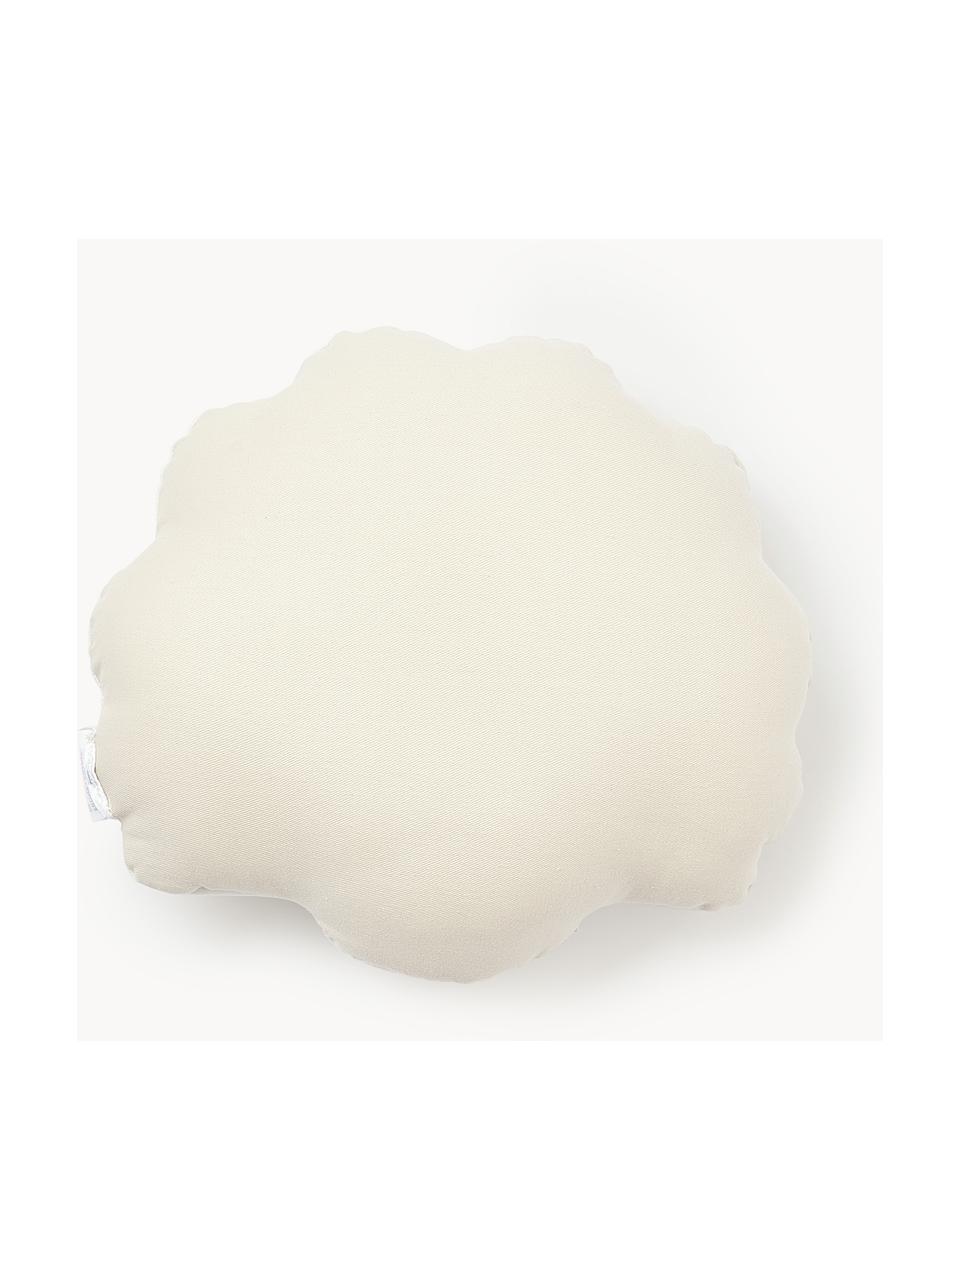 Cuscino in velluto a forma di conchiglia Shell, Retro: 100% cotone, Bianco latte, Larg. 32 x Lung. 27 cm